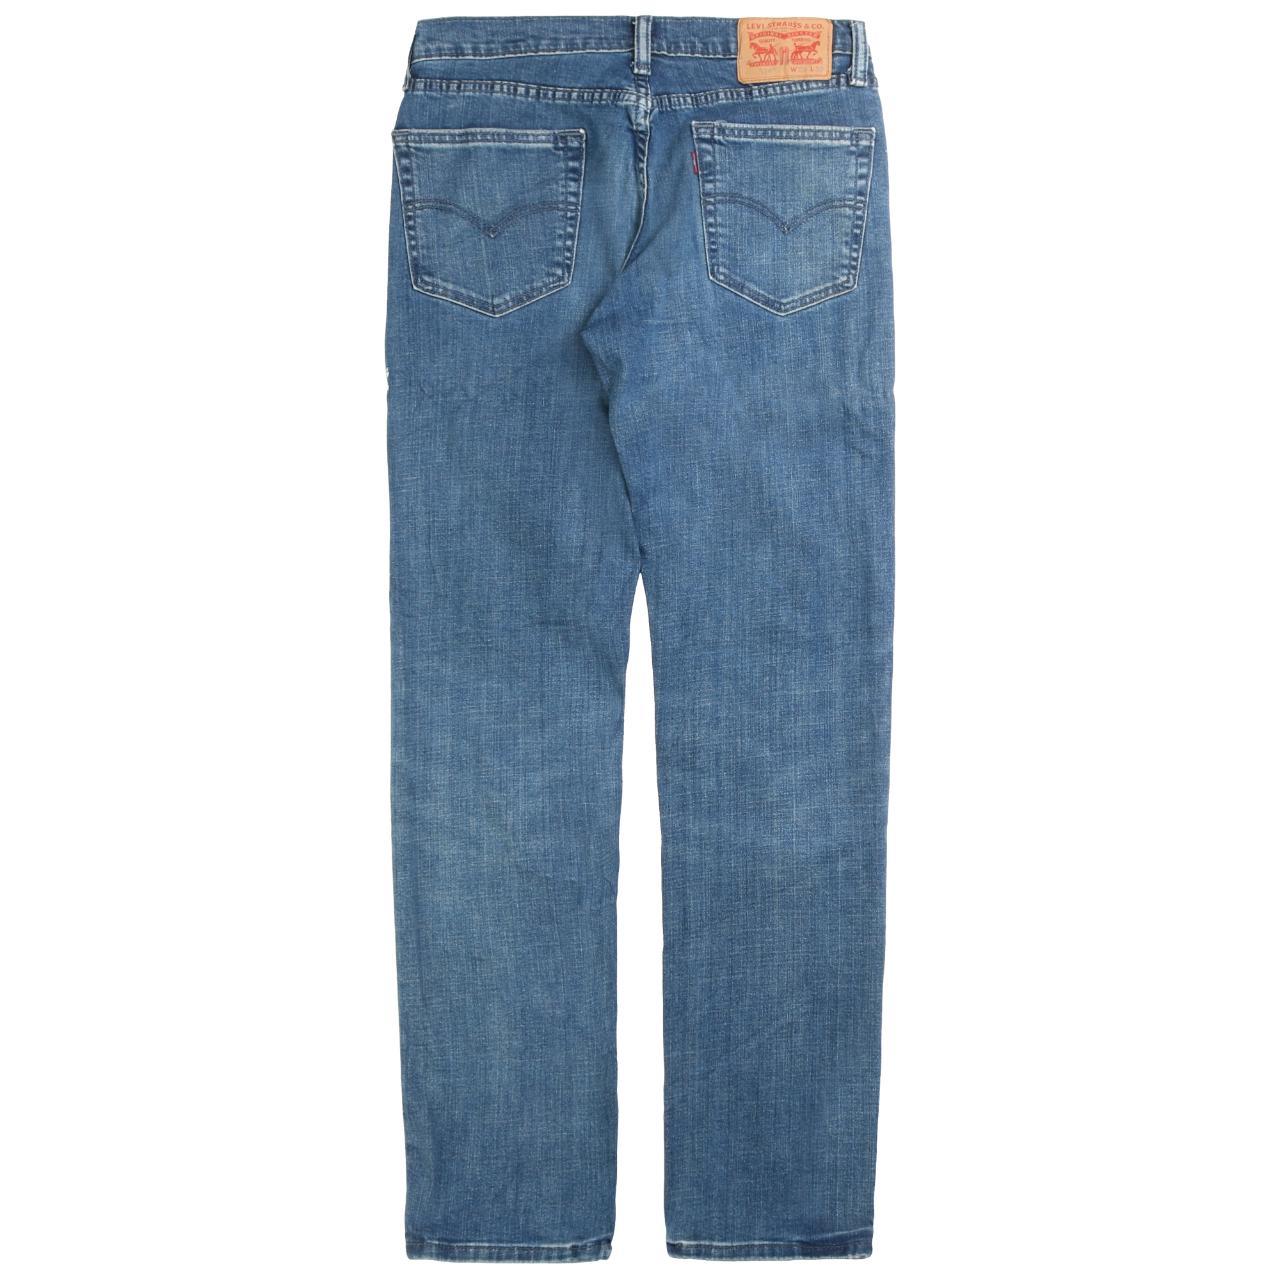 Vintage Levi's Jeans / Pants Levi's Jeans /... - Depop